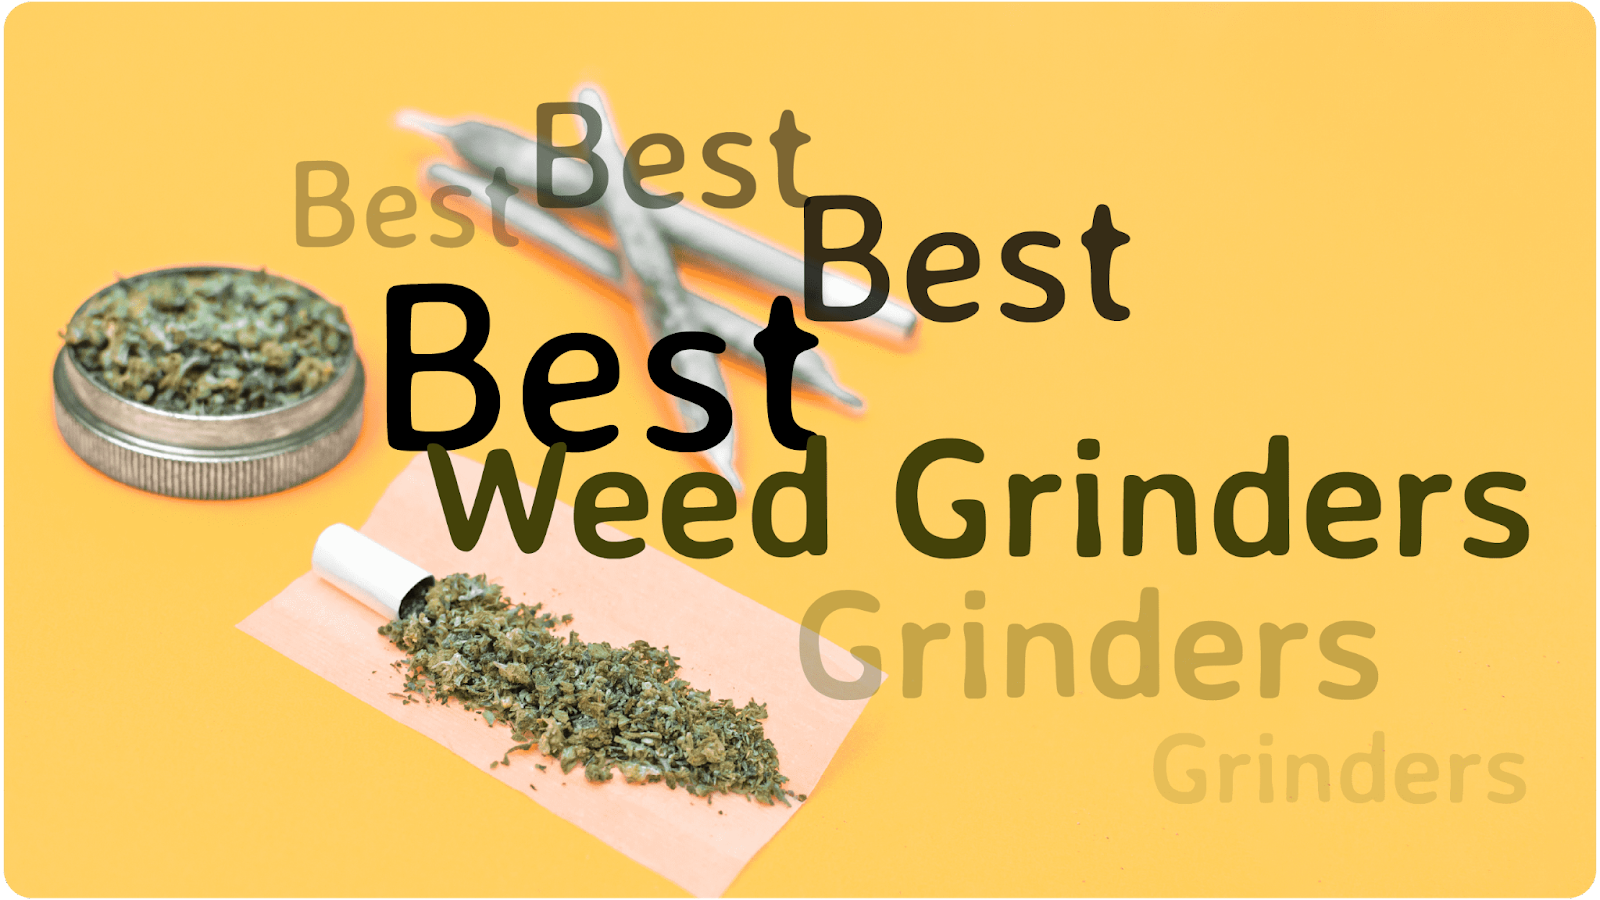 Best Types of Weed Grinders